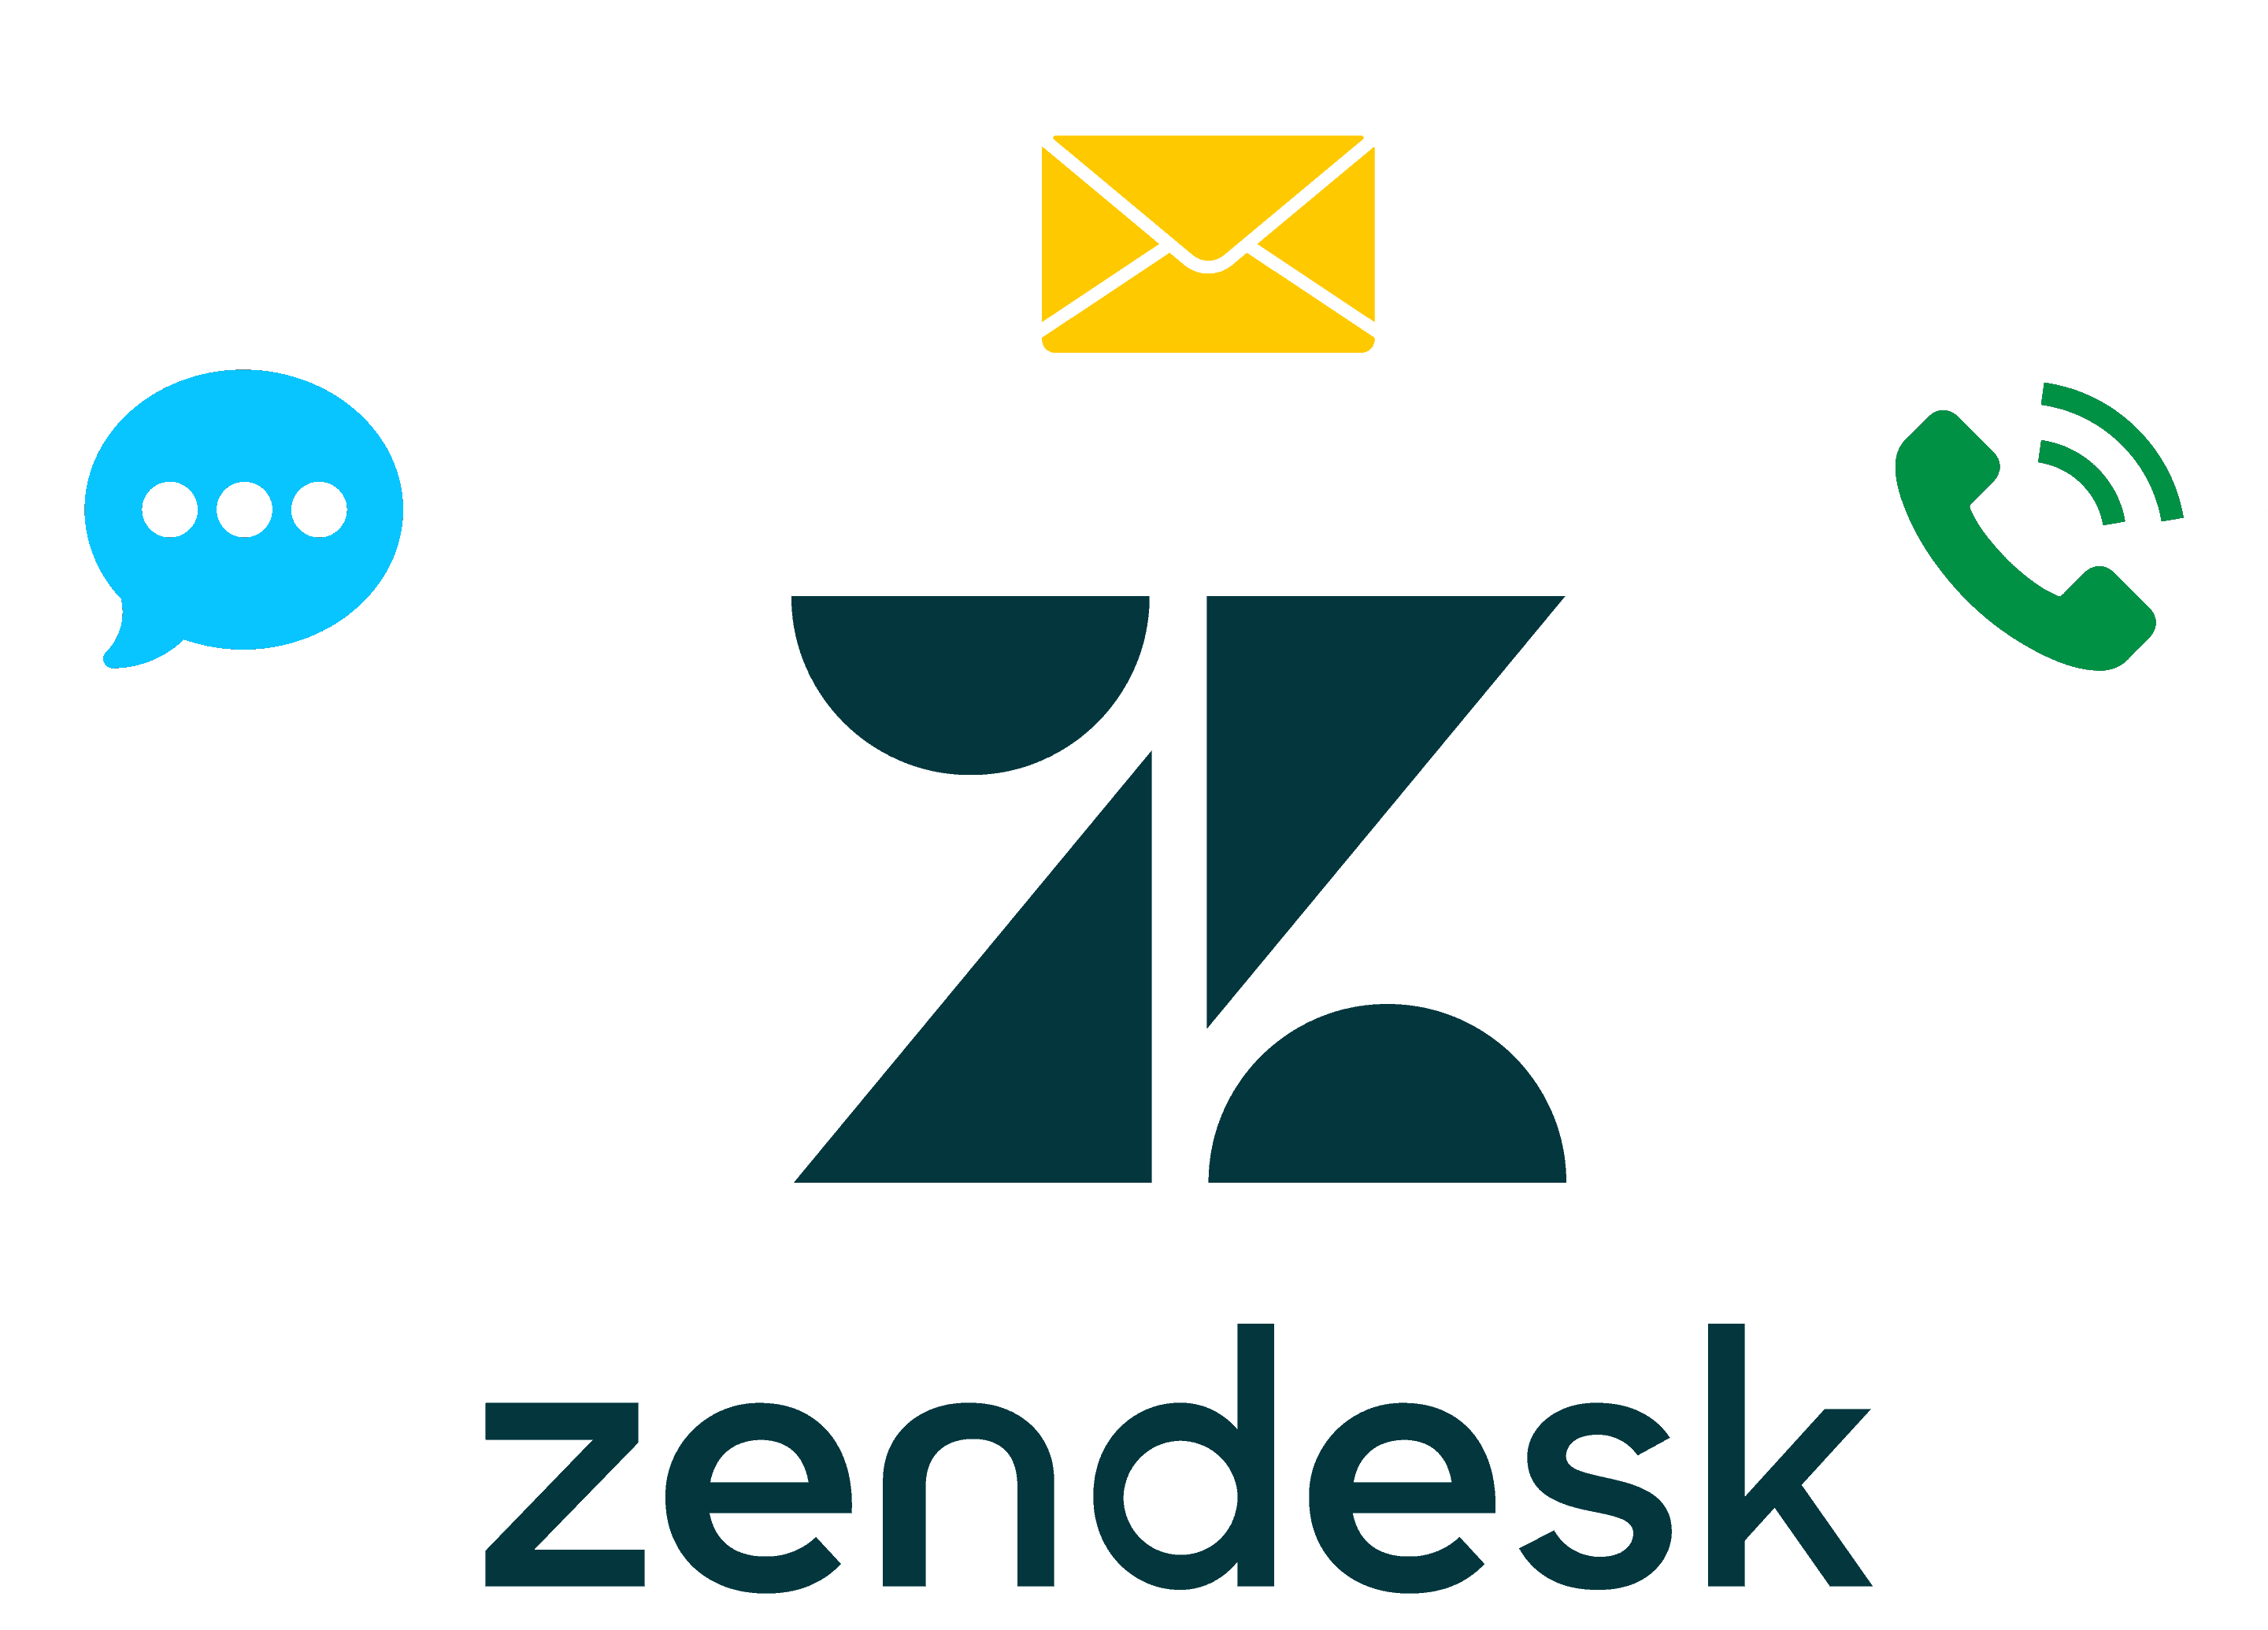 Freshdesk vs Zendesk vs Messenger Bot, Is Freshdesk the same as Zendesk?, What is better than Zendesk?, Is Freshdesk reliable?, Customer Service Team, Desk Software, Support Team